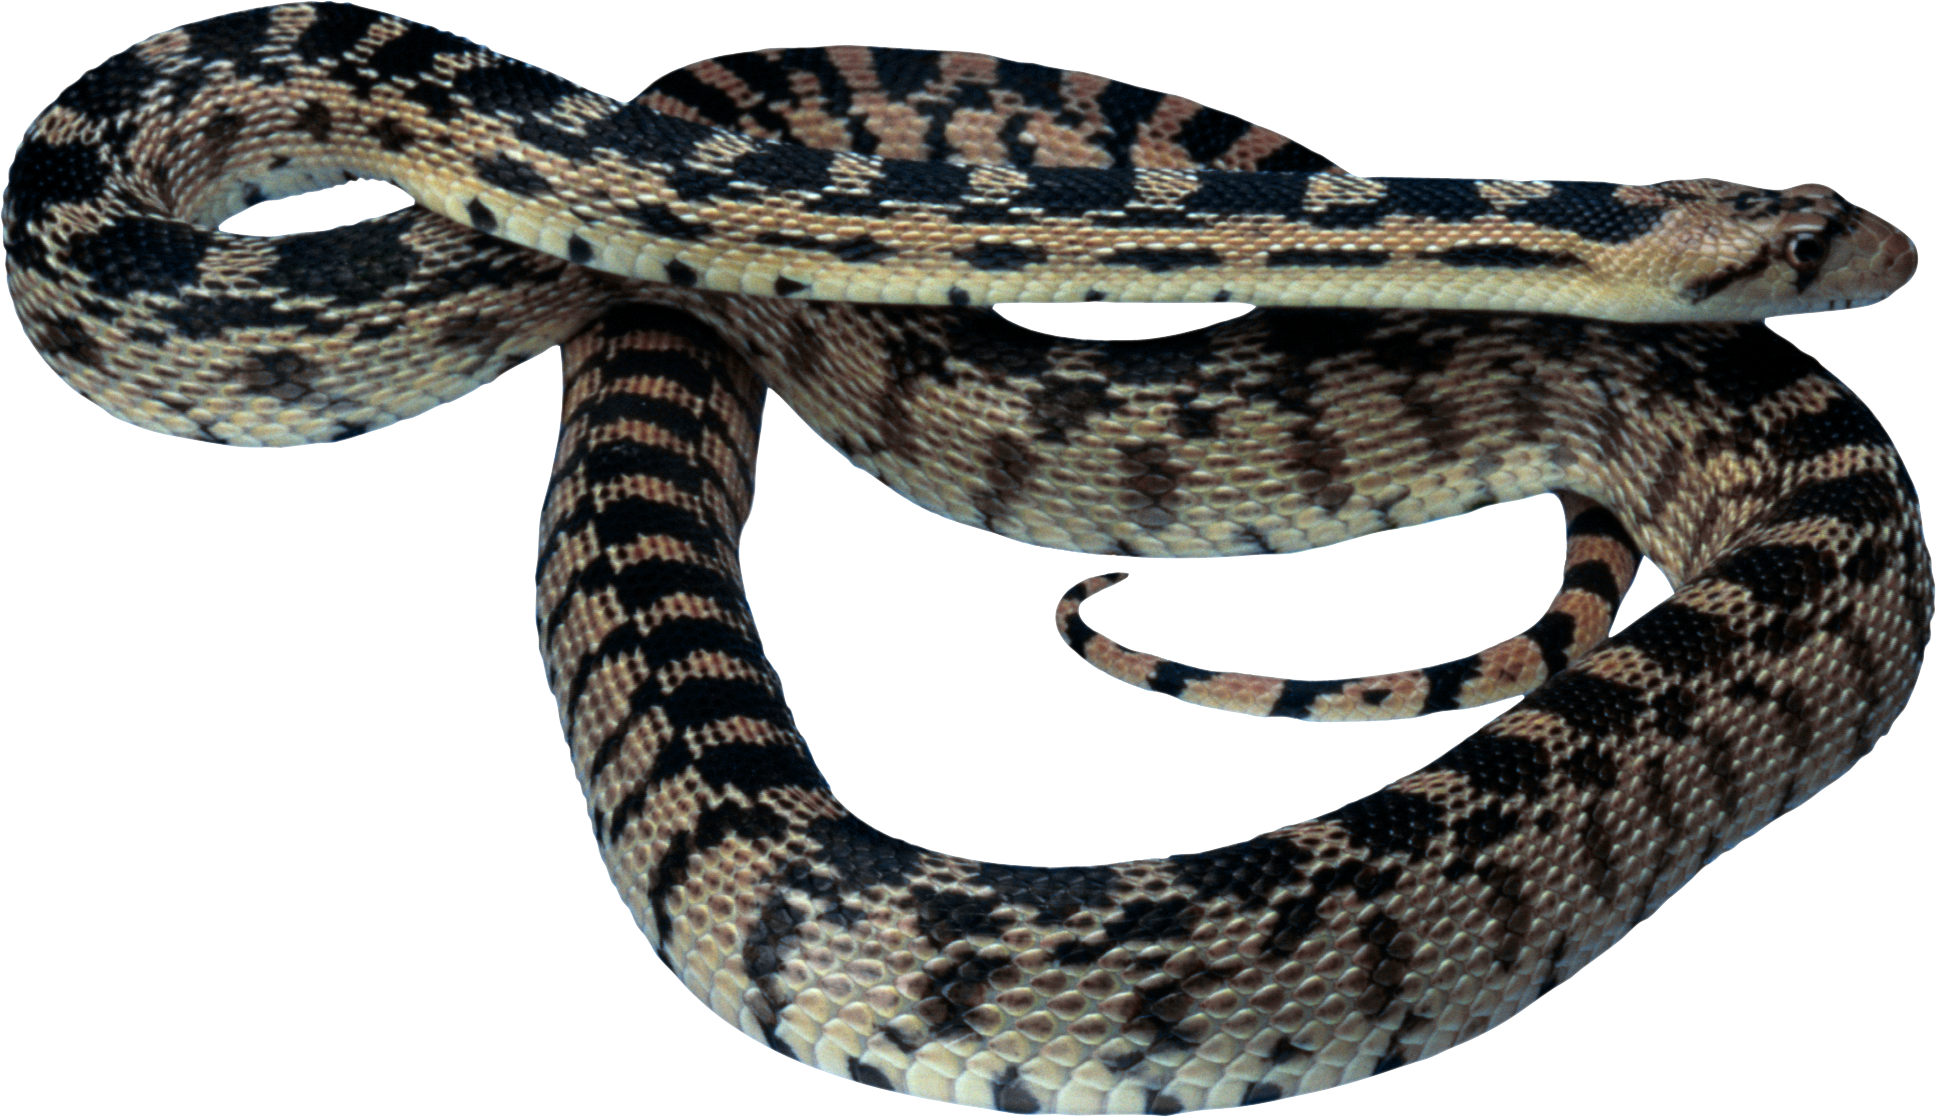 snake clipart venomous snake